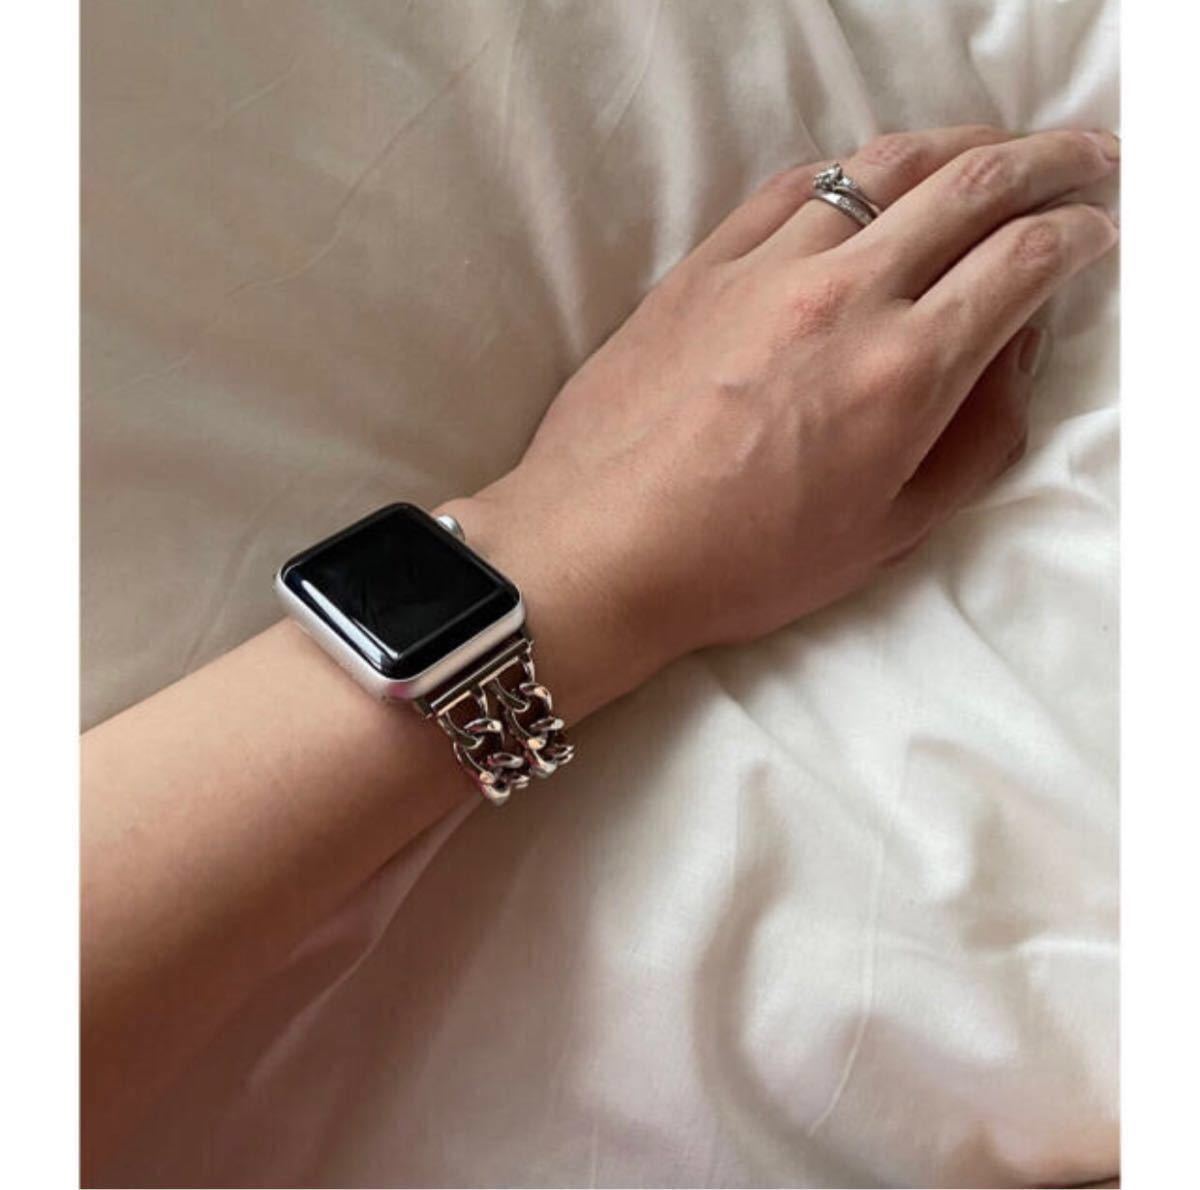 Apple Watch シングル チェーン ベルト バンド 38~40 mm